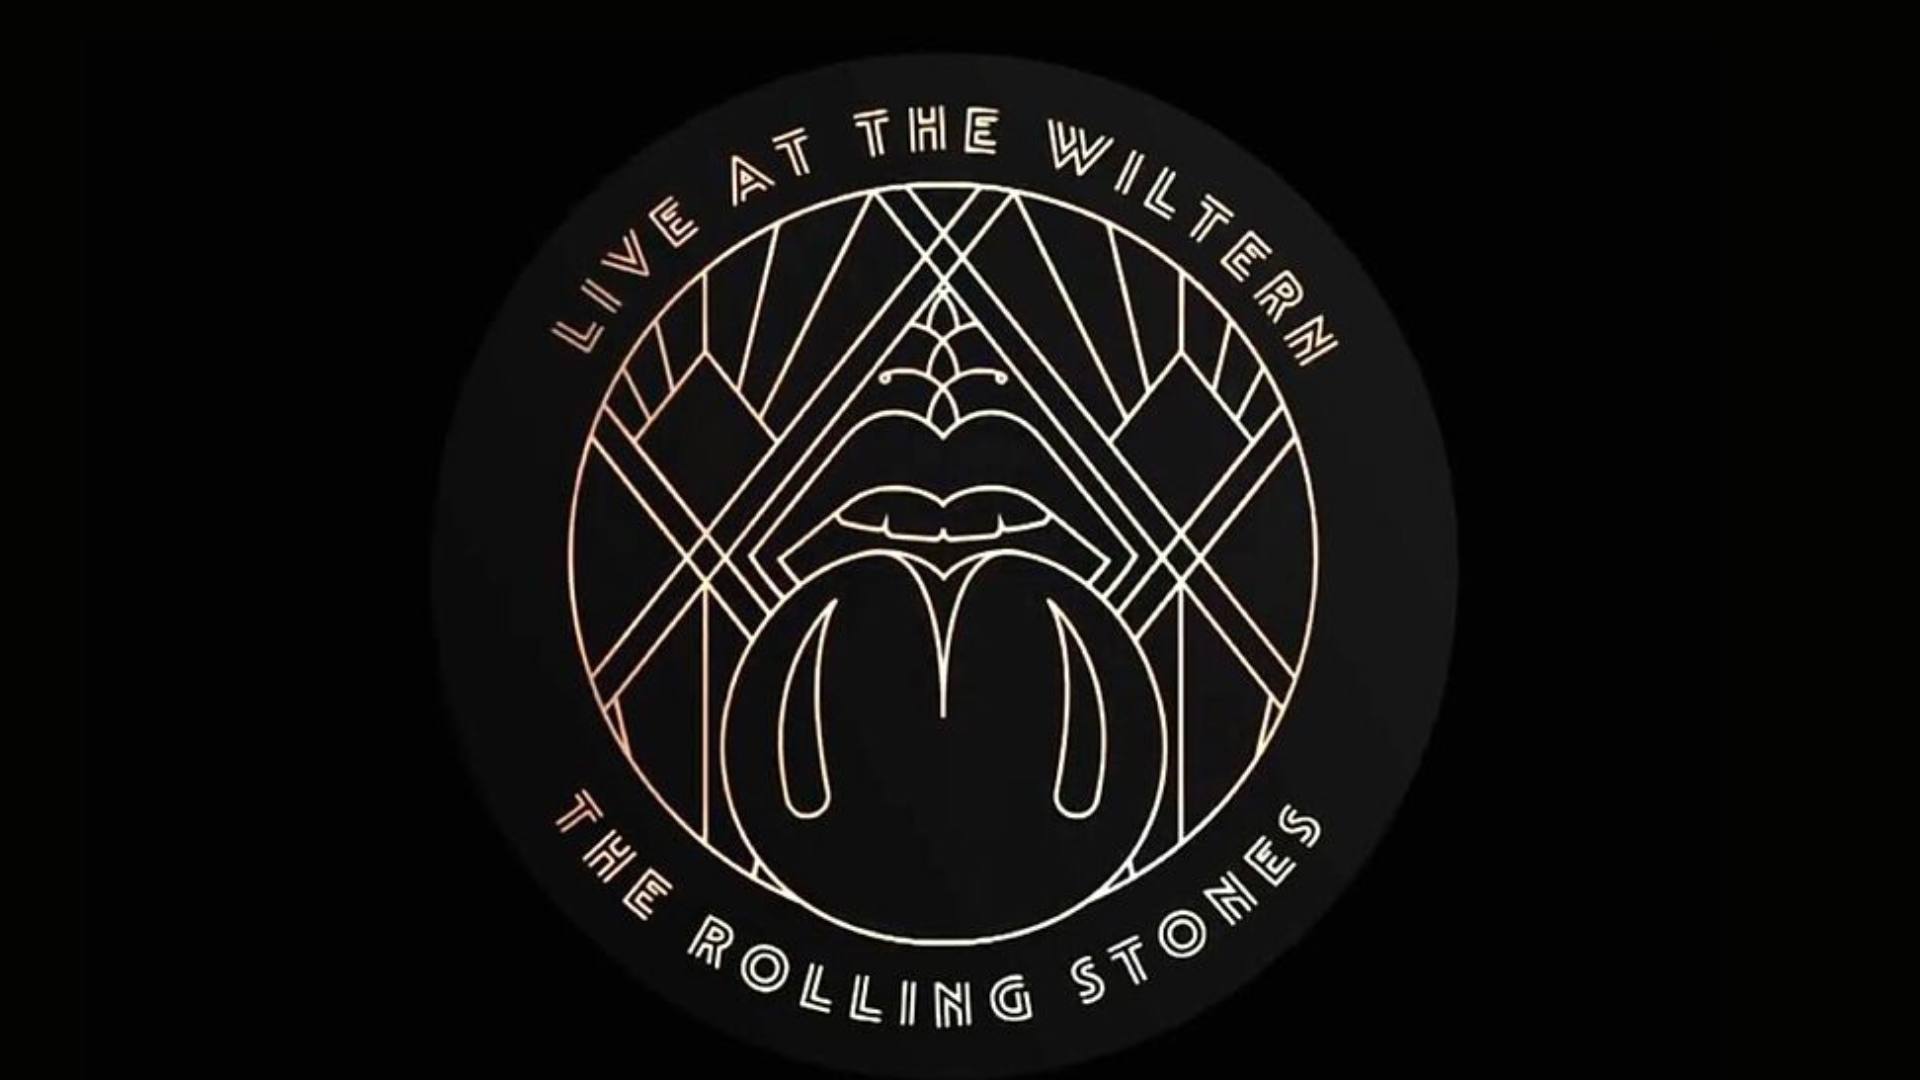 Los Rolling Stones lanzarán nuevo álbum: 'Live At The Wiltern'